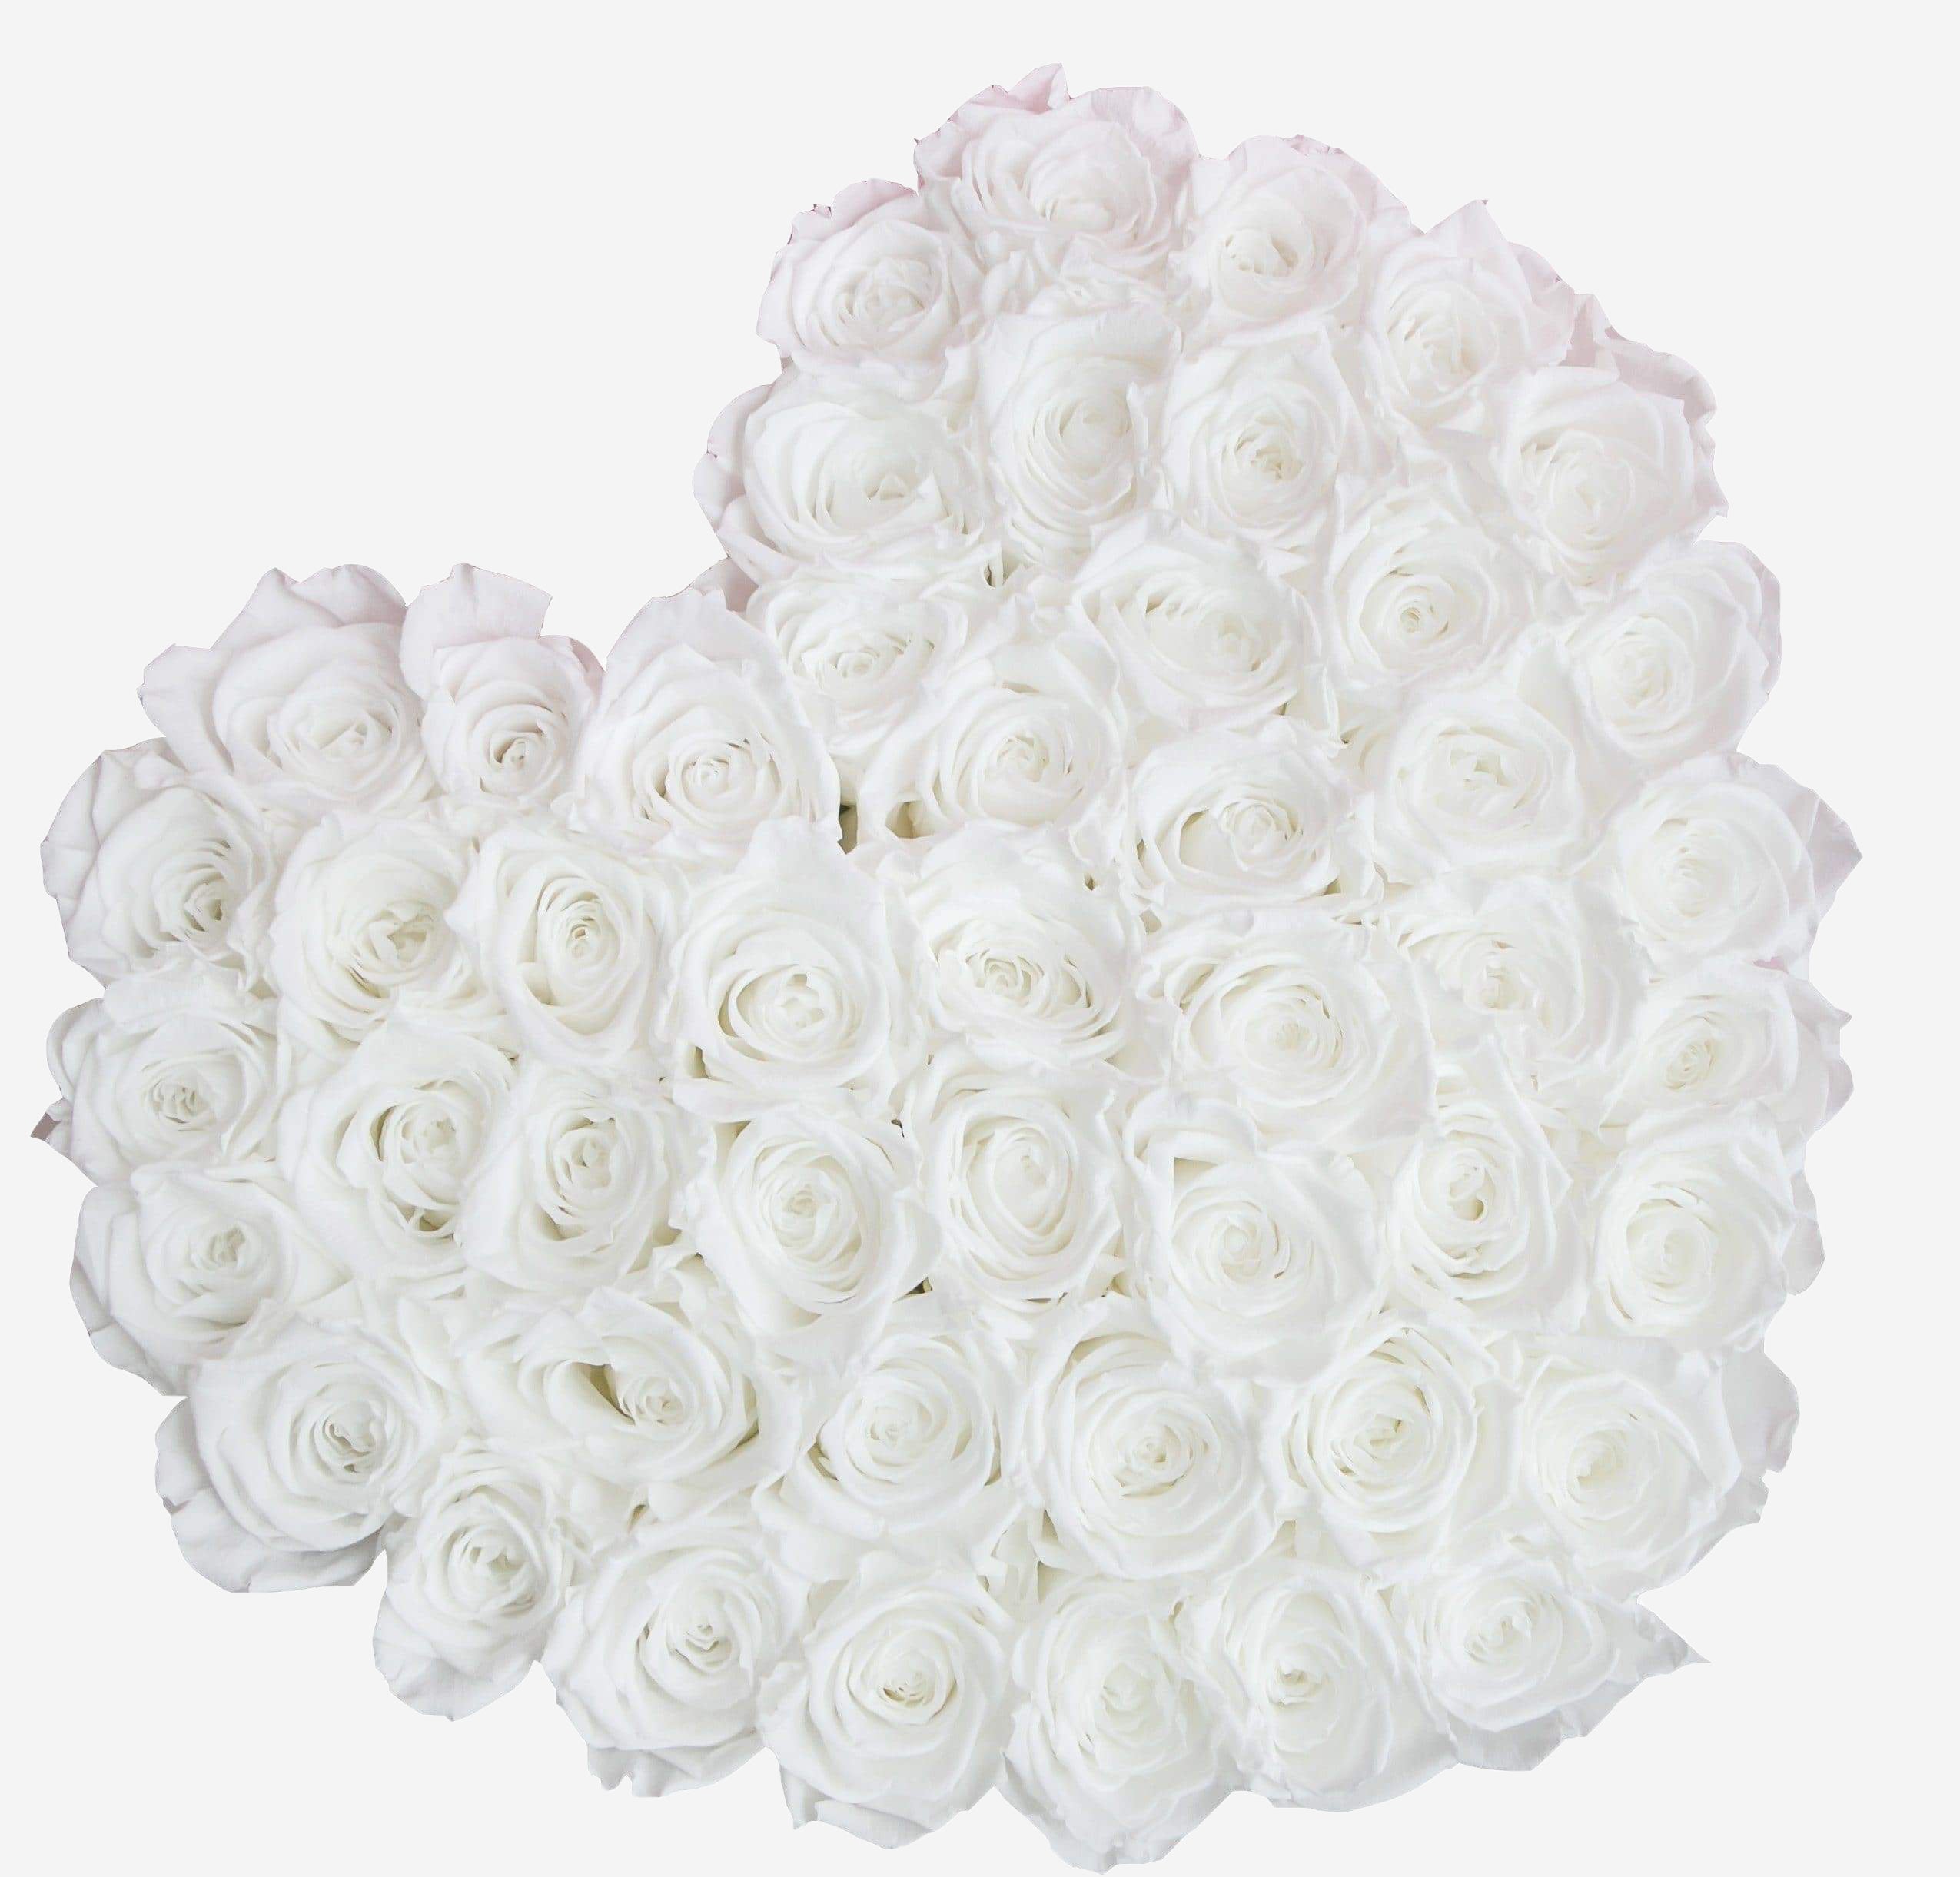 Heart Black Box | White Roses - The Million Roses